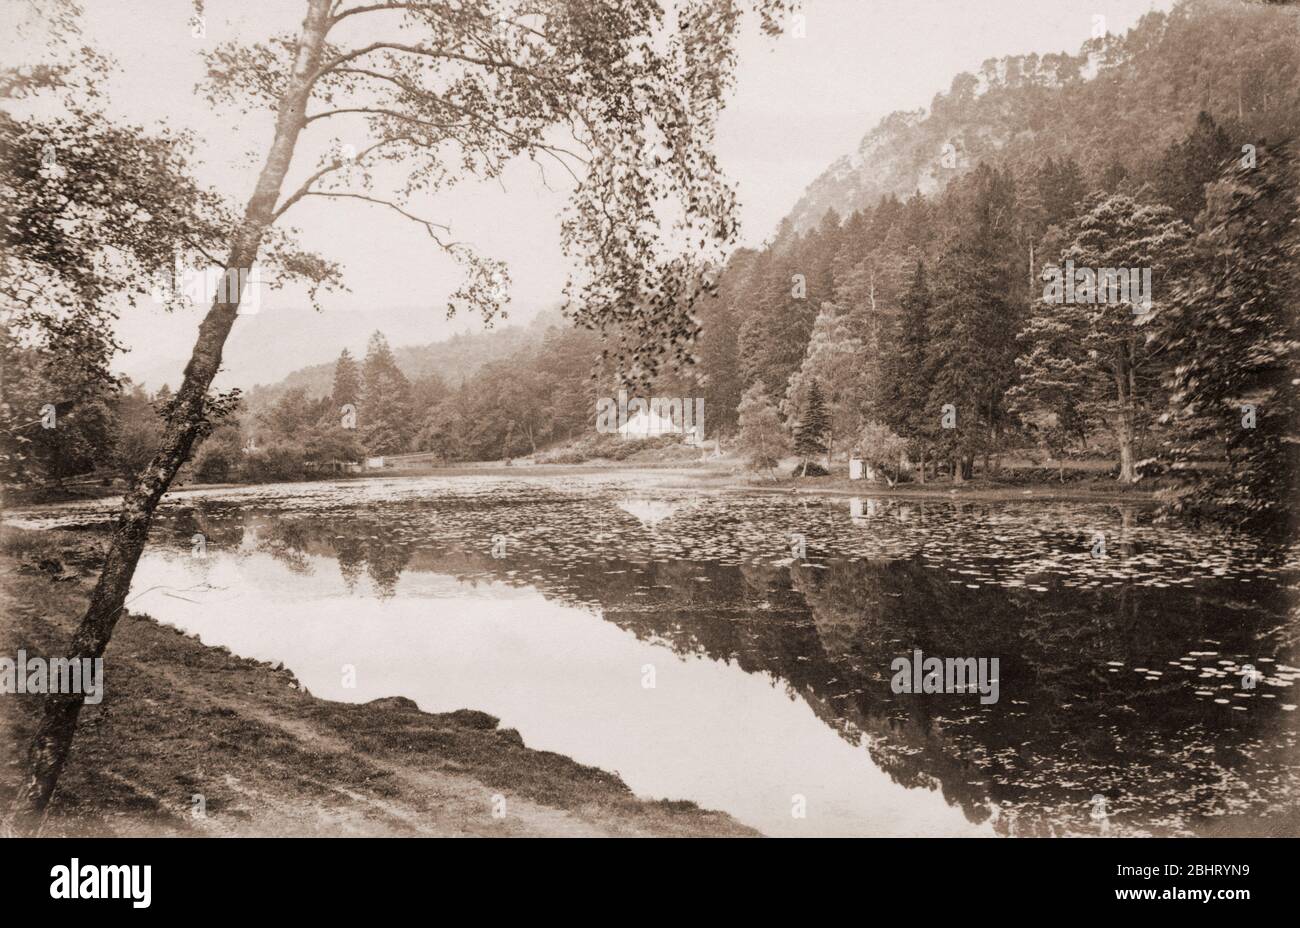 Loch Pulney, near Dunkeld, J. Valentine photo, Scotland, UK, about 1890 Stock Photo